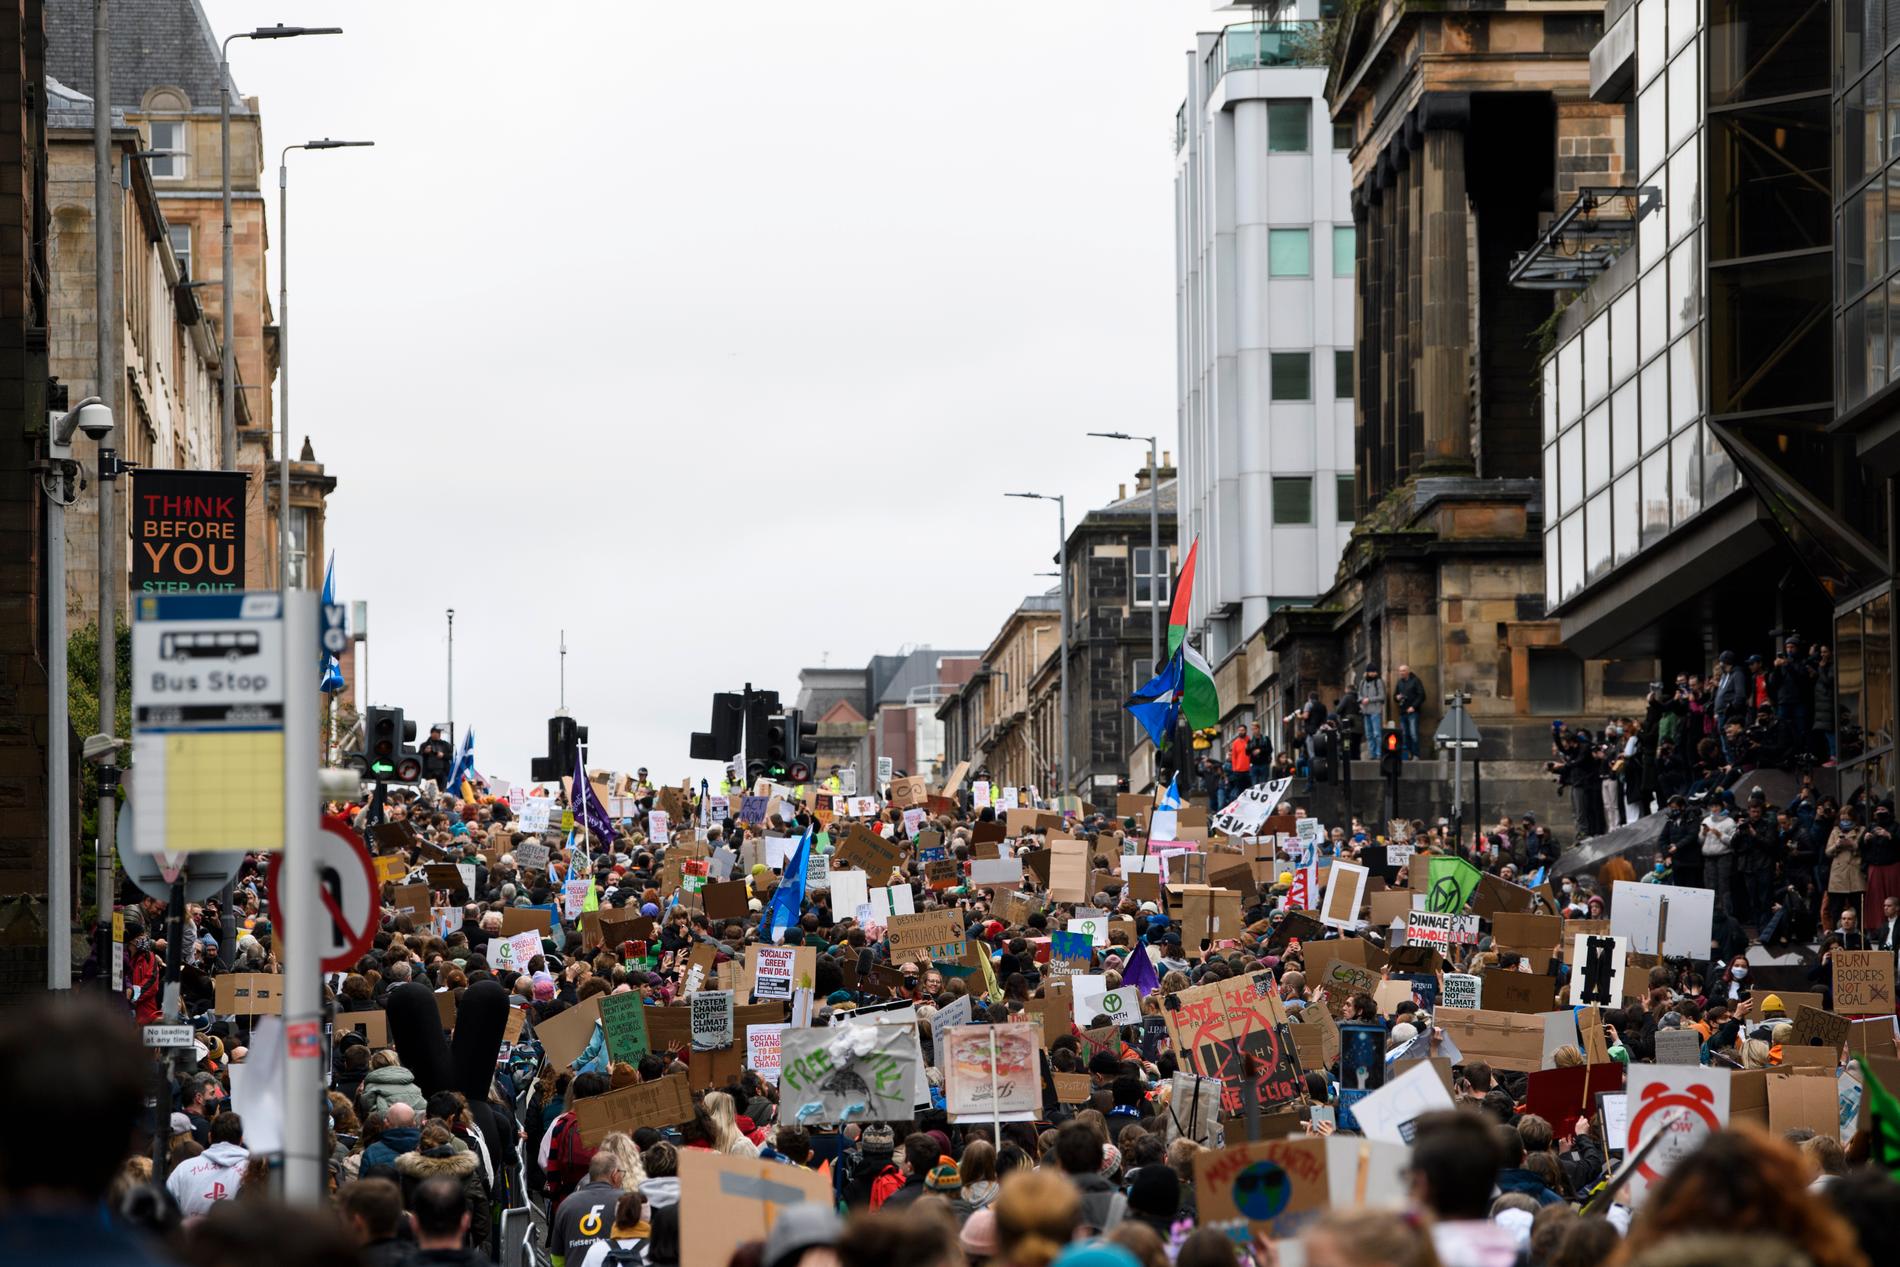 Tusentals deltagare var med i klimatdemonstrationen i Glasgow på fredagen. Under lördagen väntas mellan 50 000 till 100 000 demonstranter samlas i staden.